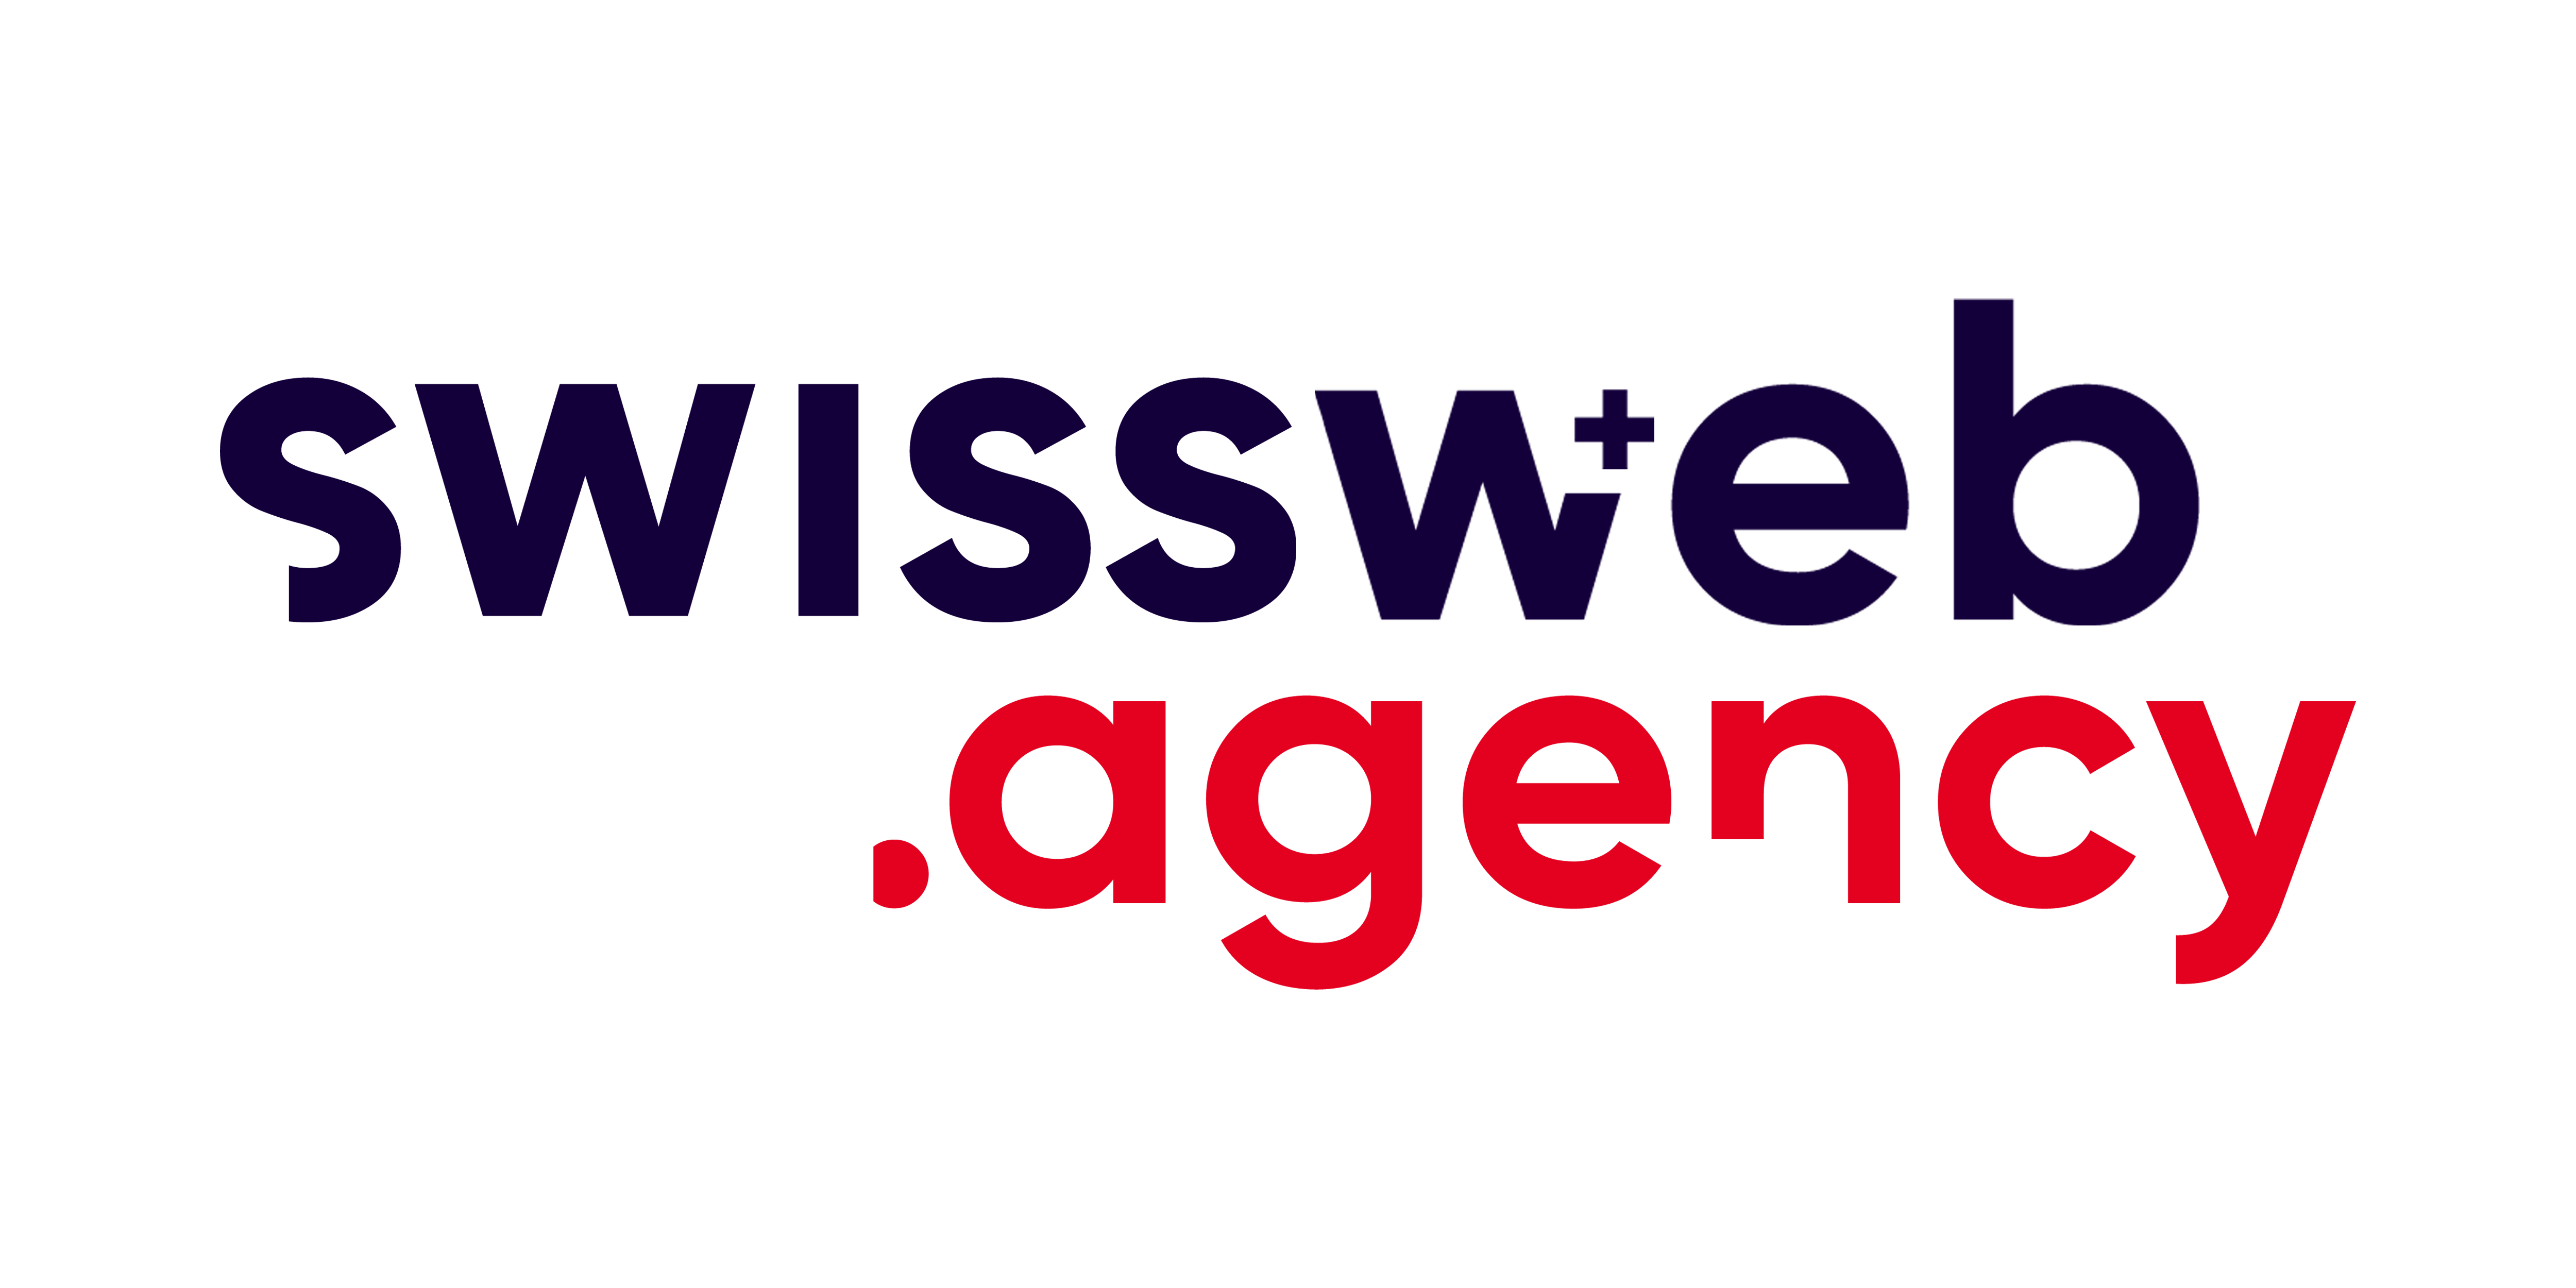 SwissWebAgency